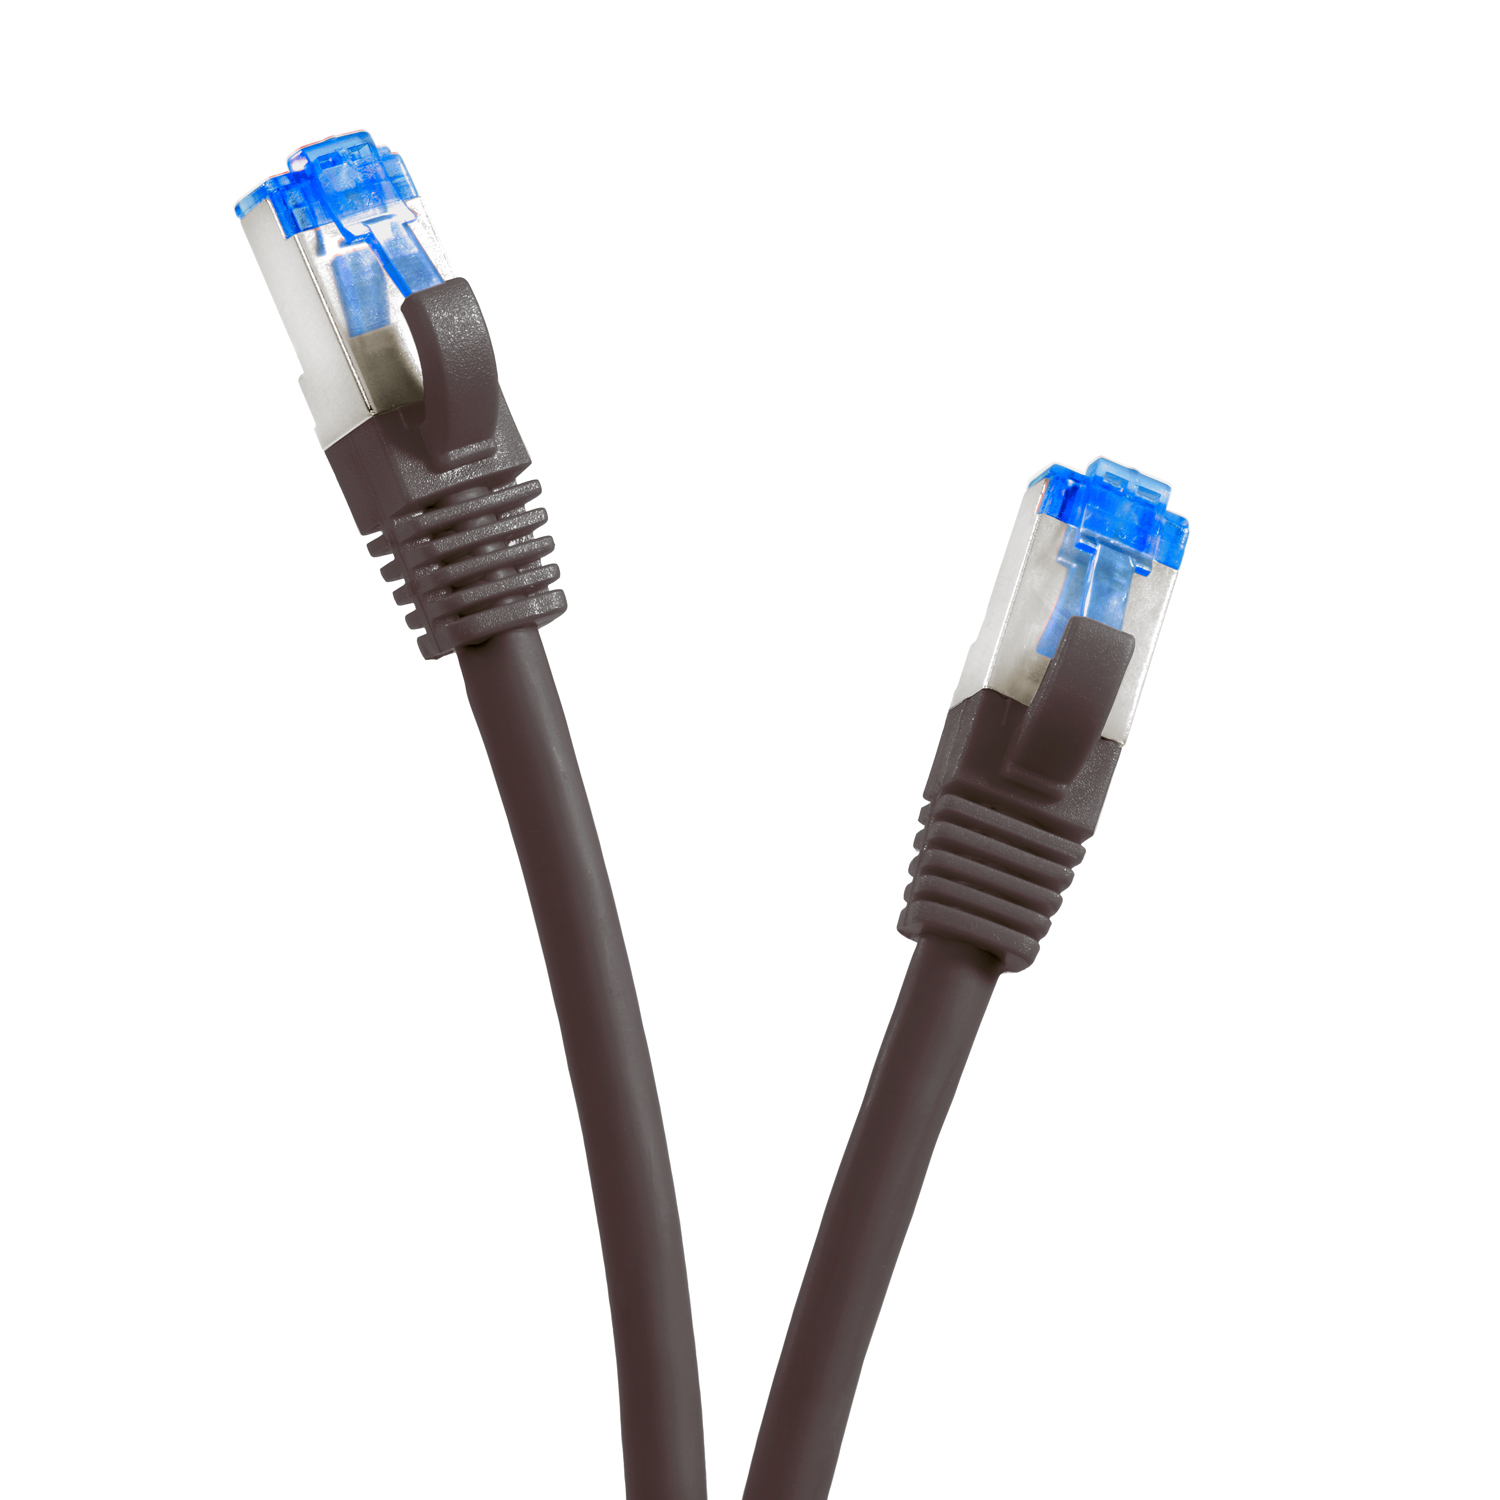 Netzwerkkabel Netzwerkkabel, m 0,25 Patchkabel TPFNET 0,25m S/FTP schwarz, 10GBit, /